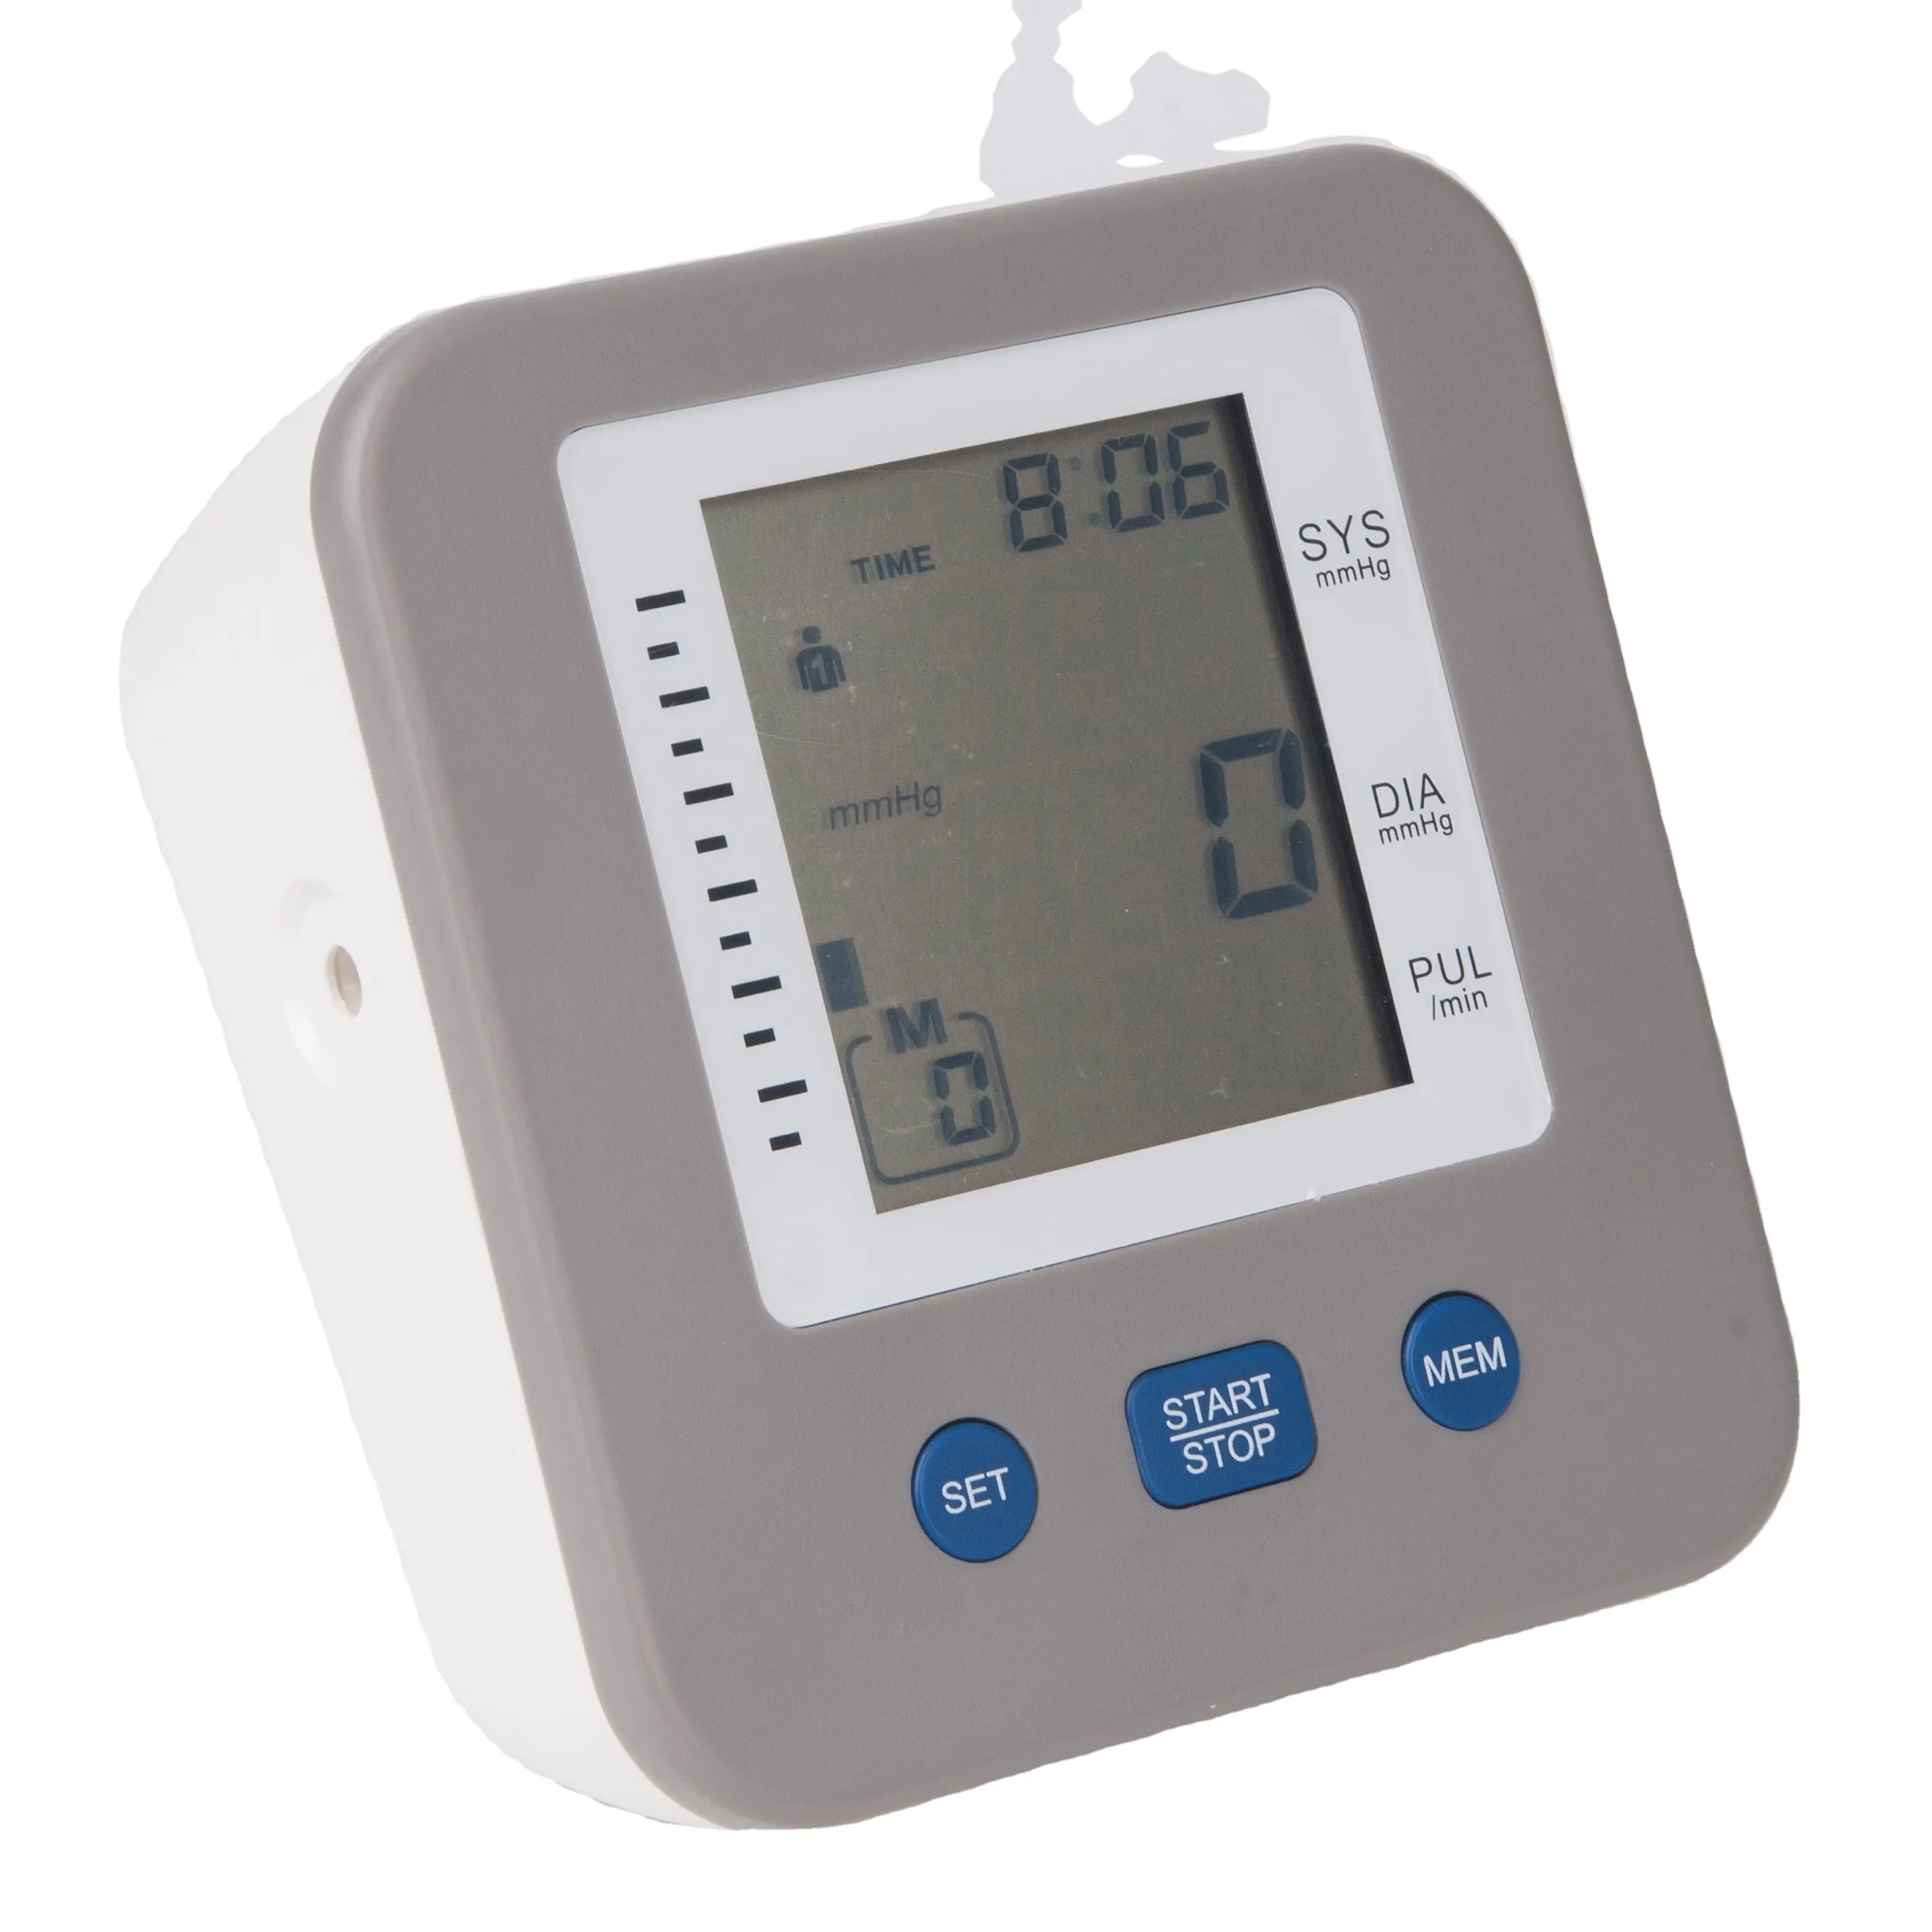 저렴한 가격, 정확한 측정, 혈압 모니터 건강한 가정 생활